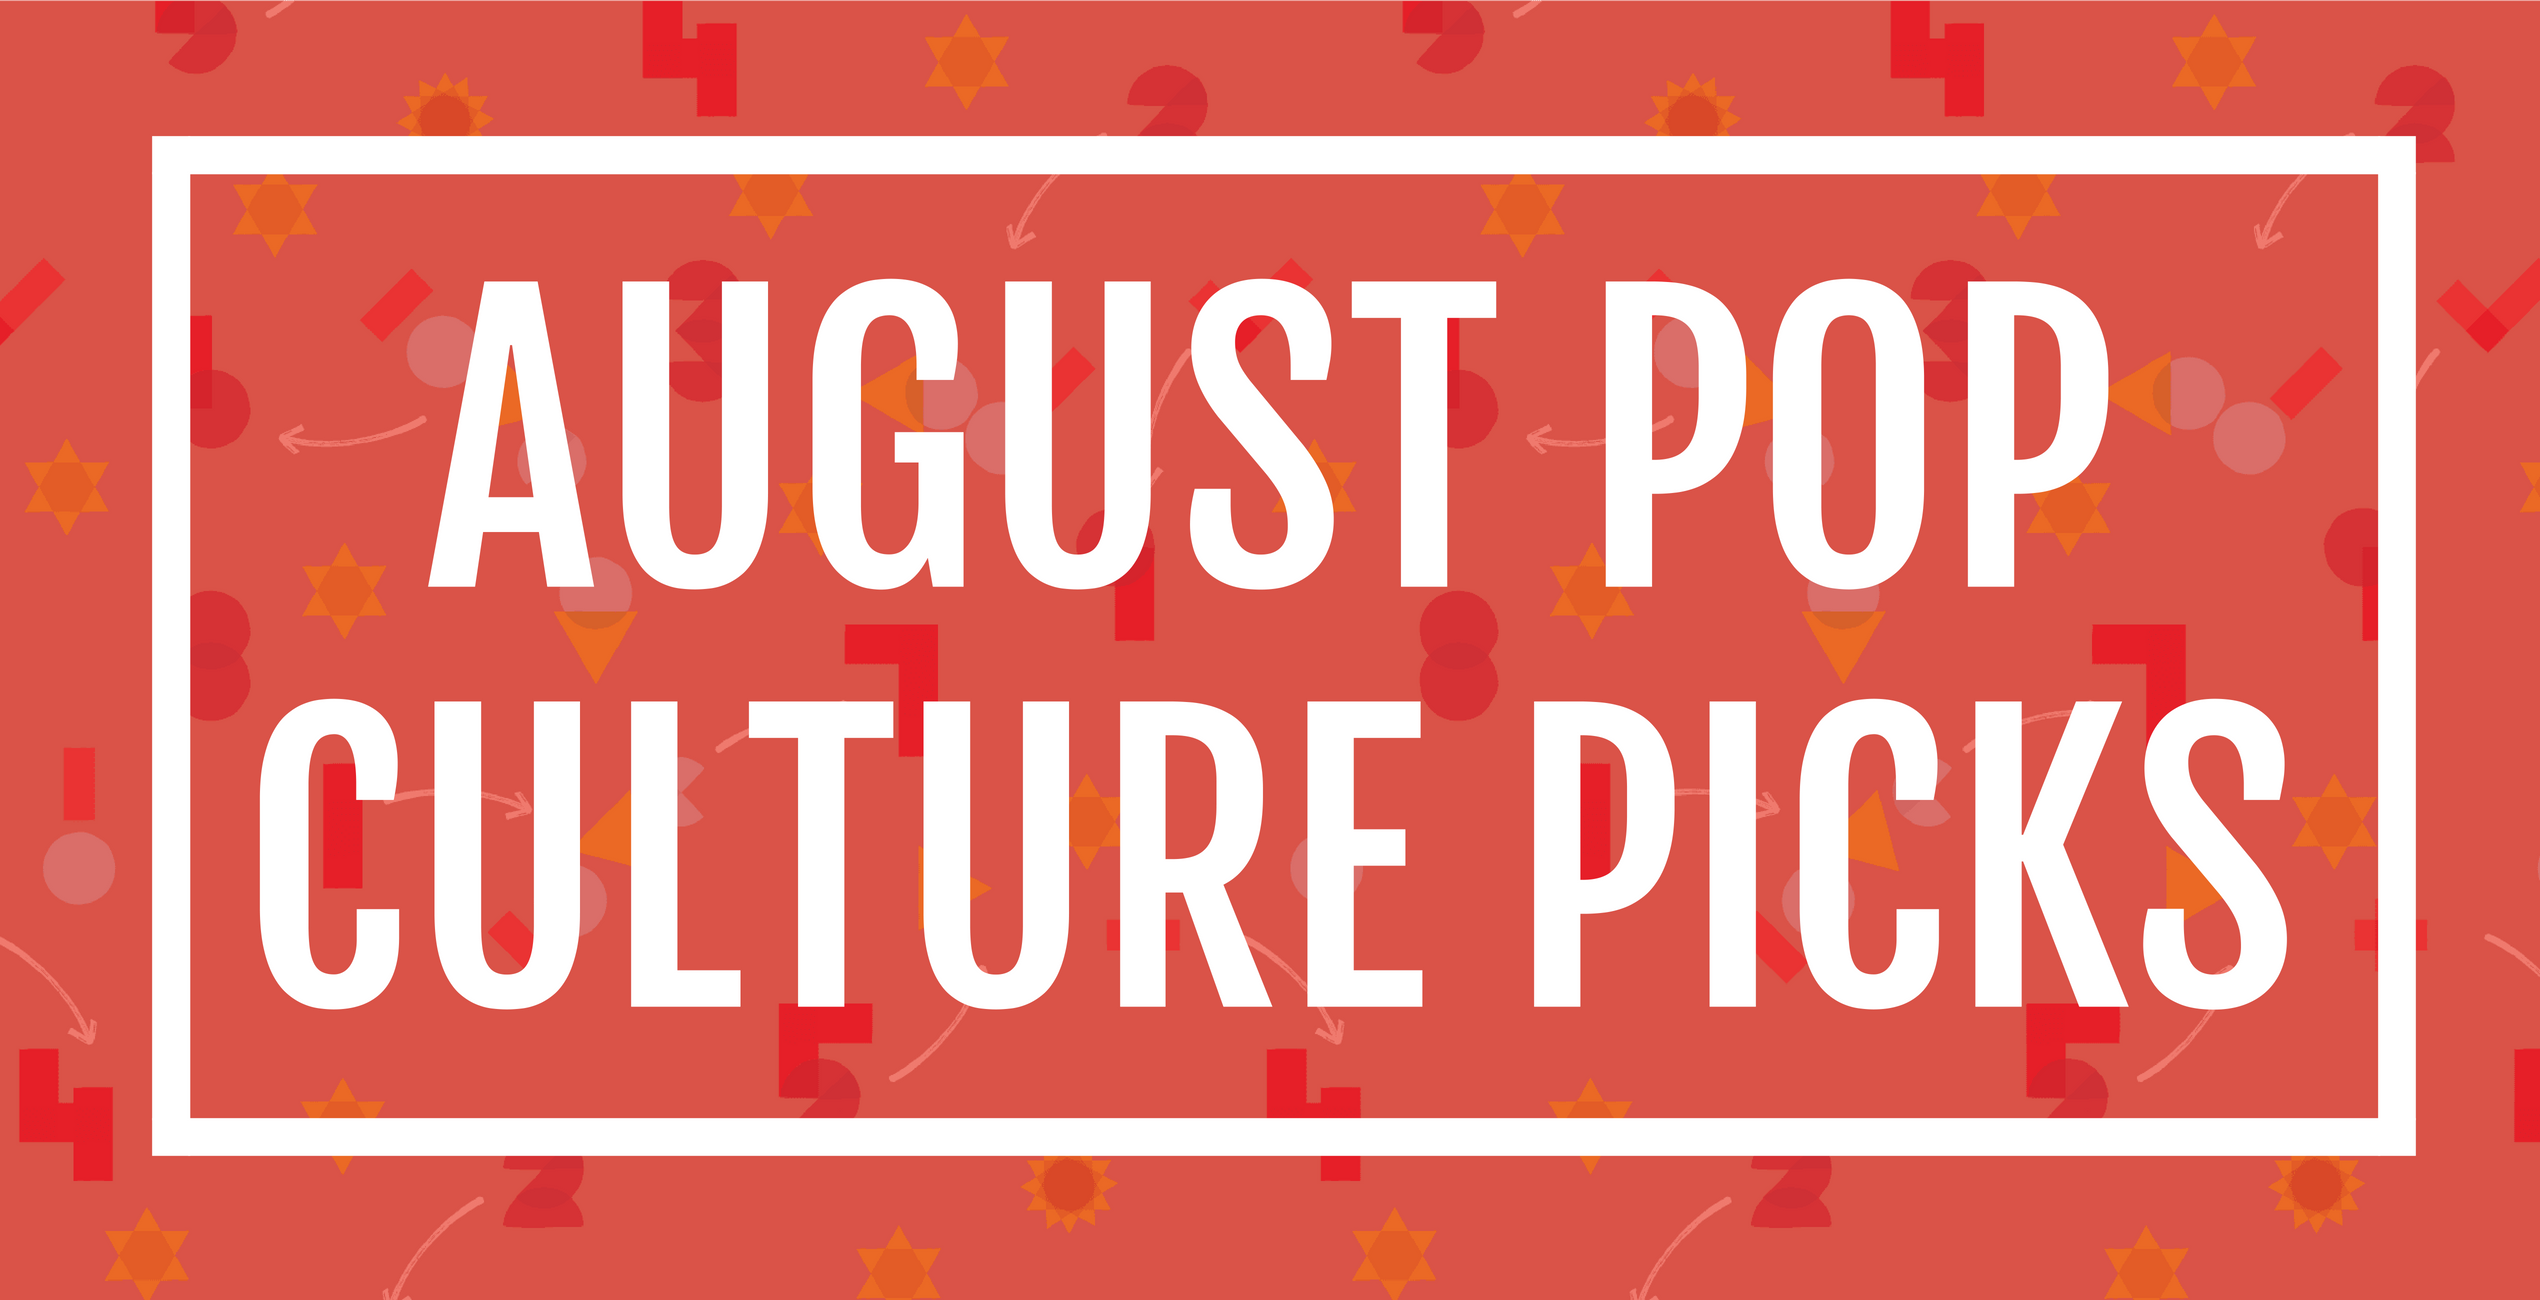 August Pop Culture Picks